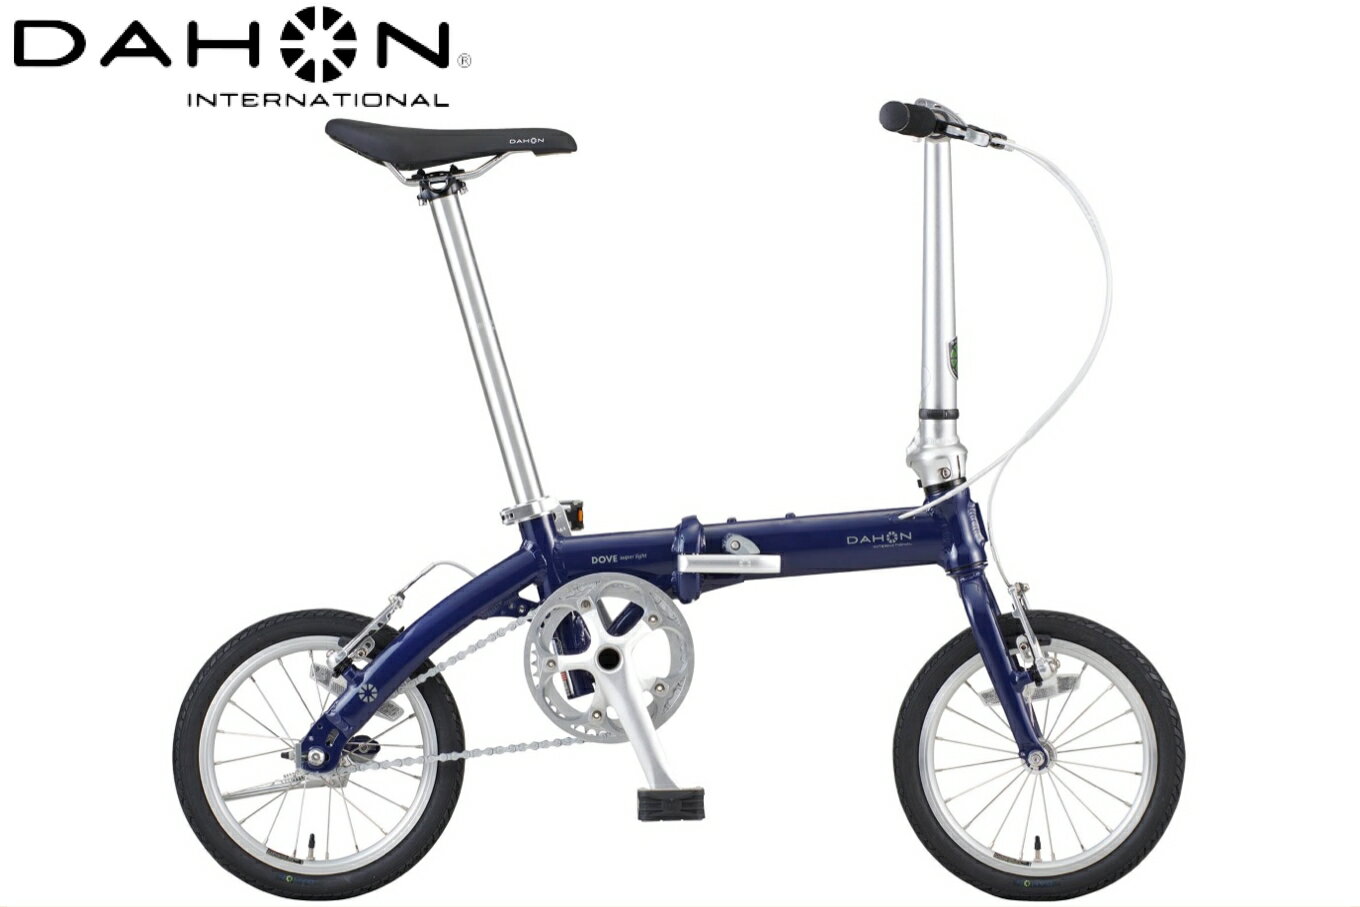 40年の歴史をもつ米国ダホン社の高性能折り畳み自転車 DAHON International DOVE SL